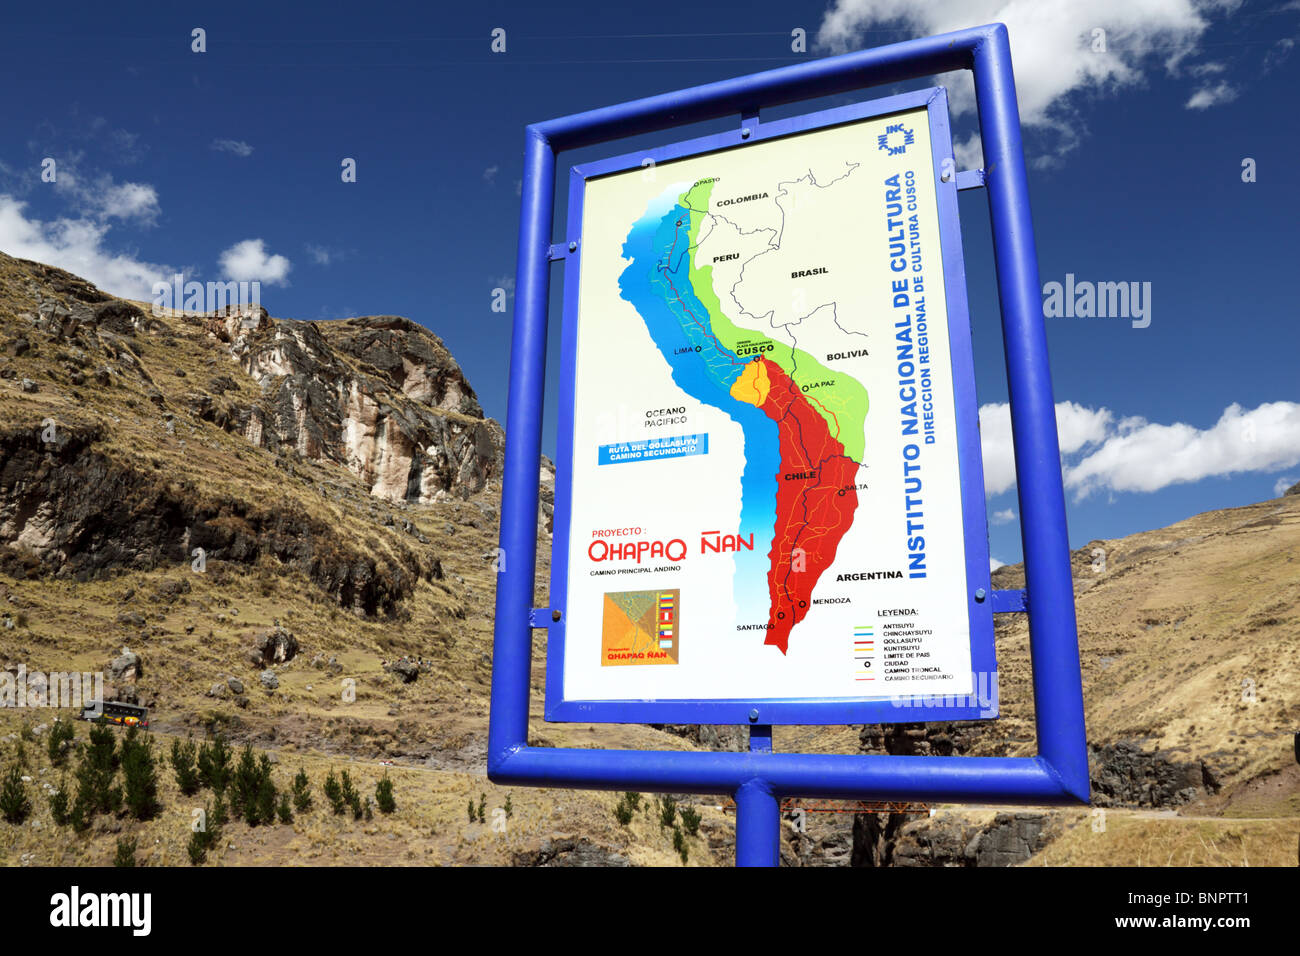 Cartello con la mappa dell'Impero Inca per il progetto della strada Qhapaq Ñan Inca sul sito dell'ultimo ponte sospeso Inca, Qeswachaca, regione di Cusco, Perù Foto Stock